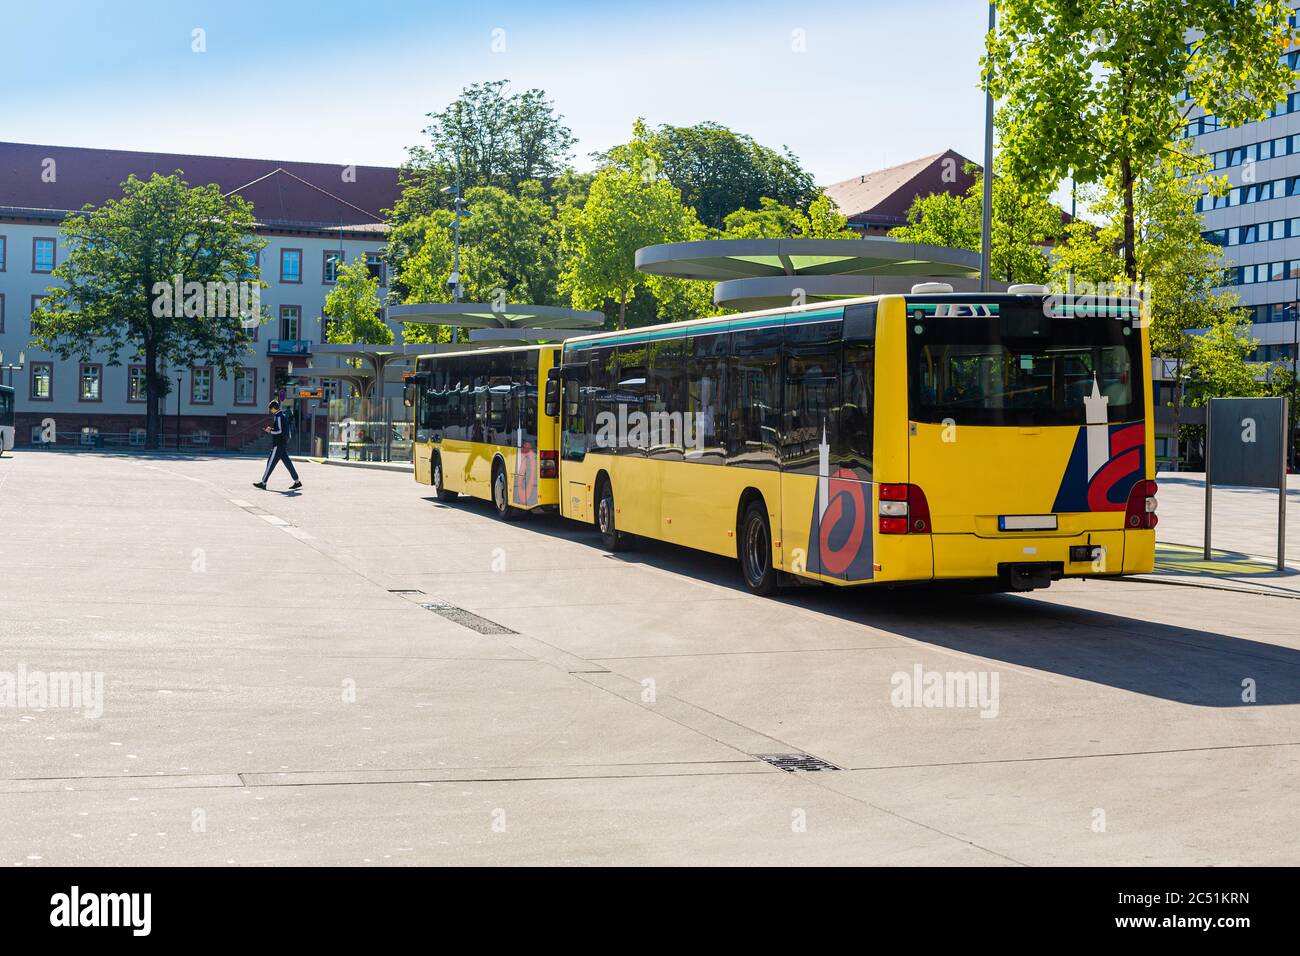 Gelbe Busse. Öffentliche Verkehrsmittel in Deutschland. Letzte Station. Sommer in der Stadt. Geparkte Busse. Stockfoto